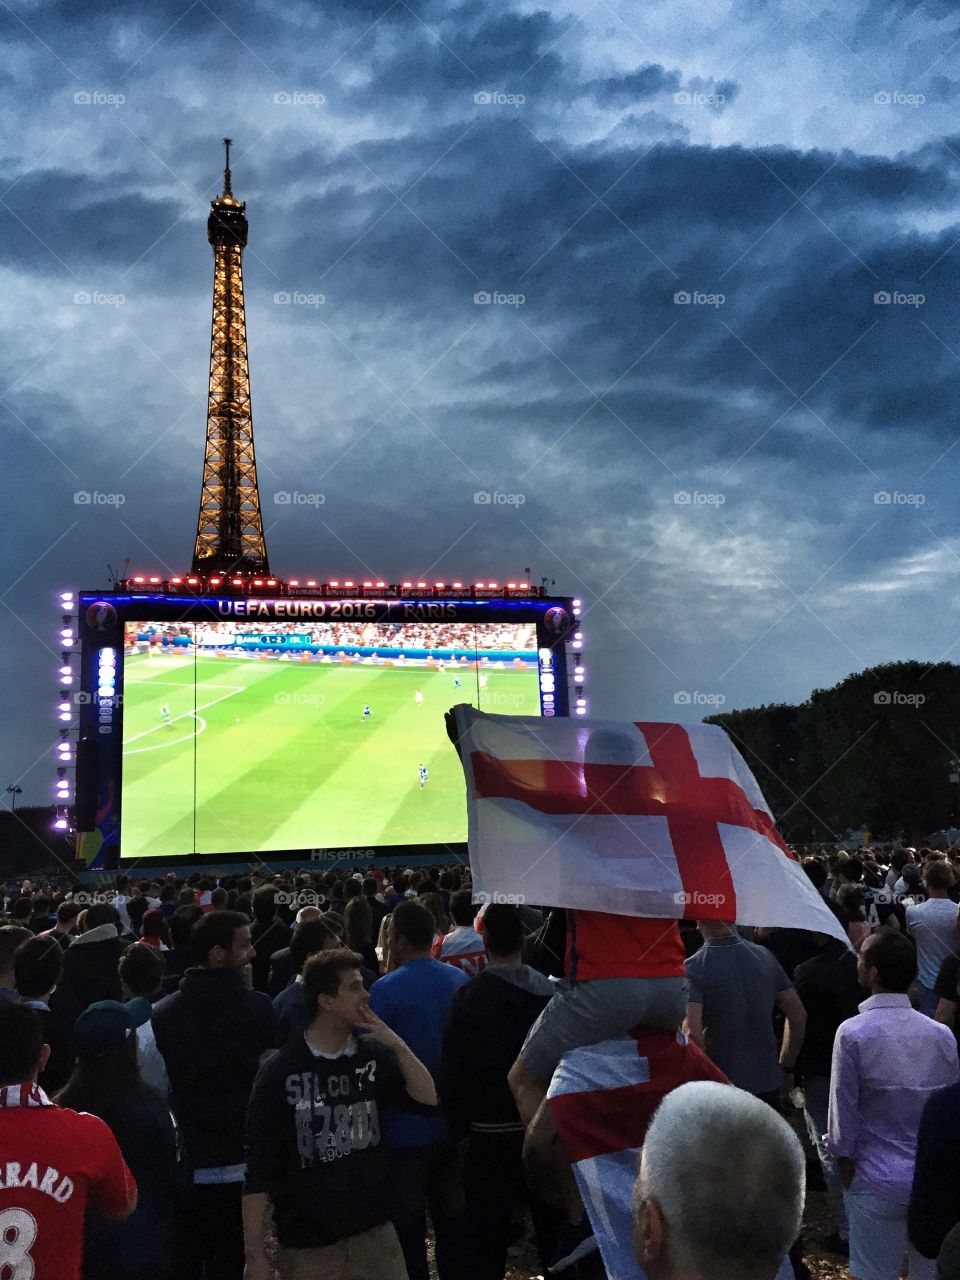 Euro 2016 Fan Park